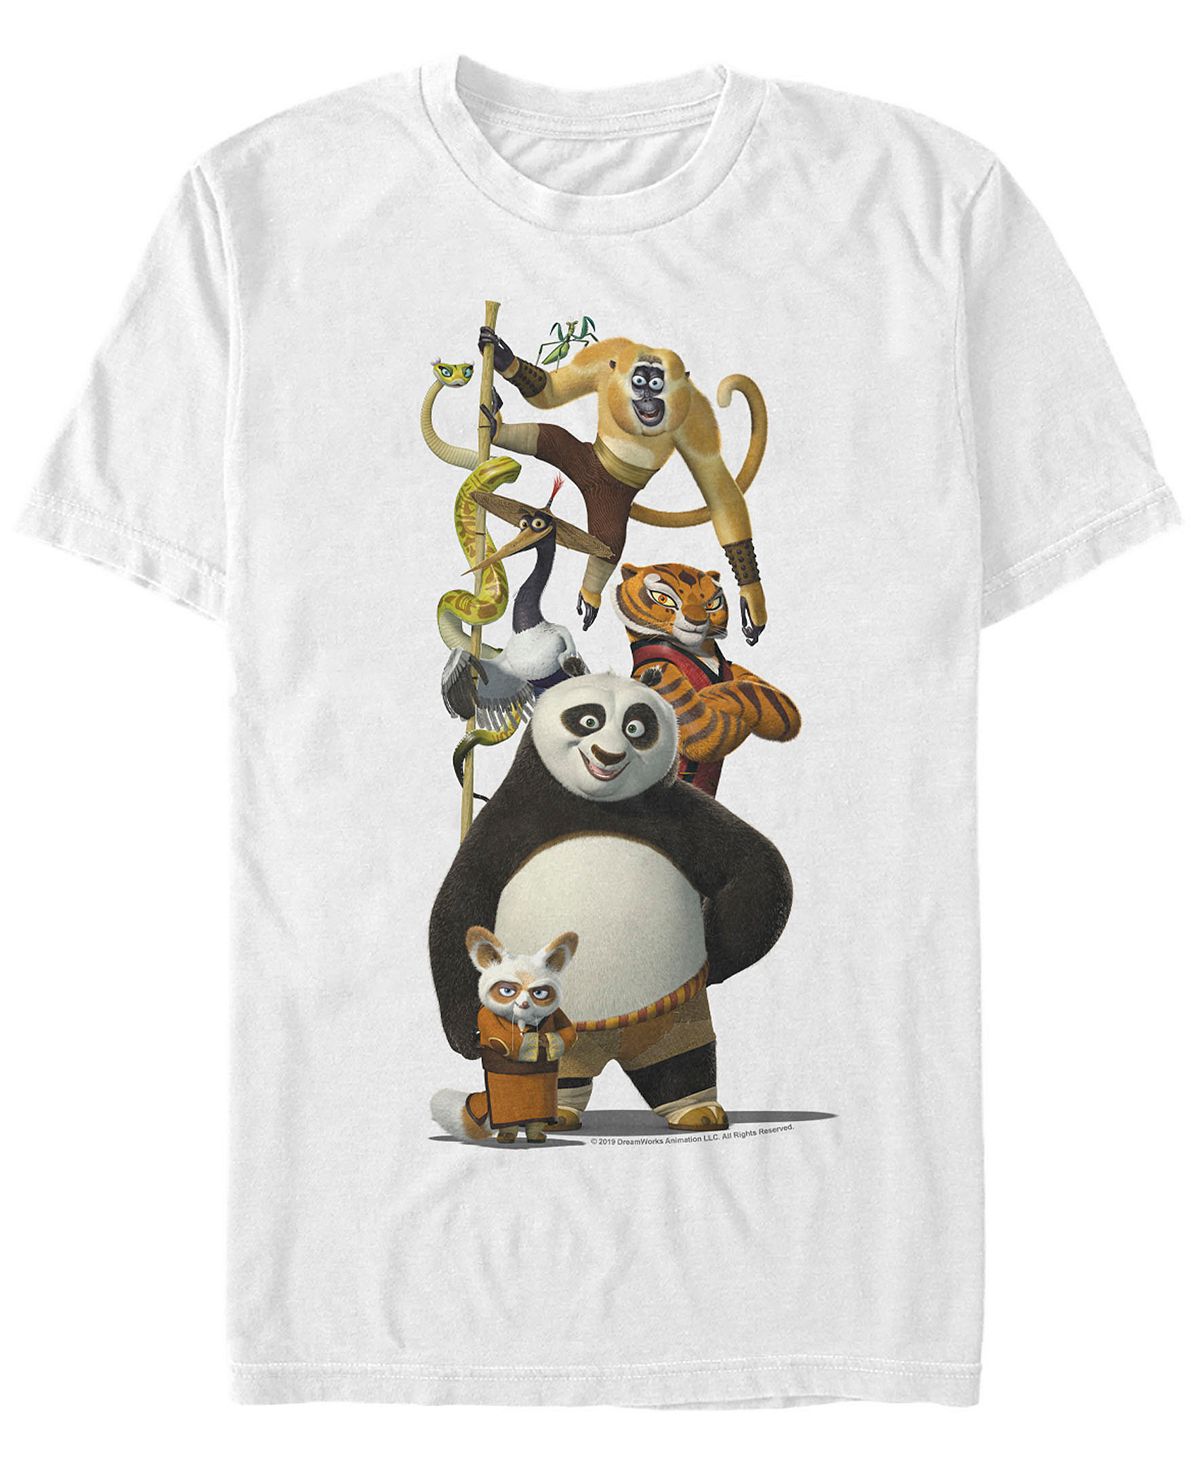 Мужская футболка с короткими рукавами по и друзья кунг-фу панда Fifth Sun, белый кунг фу панда